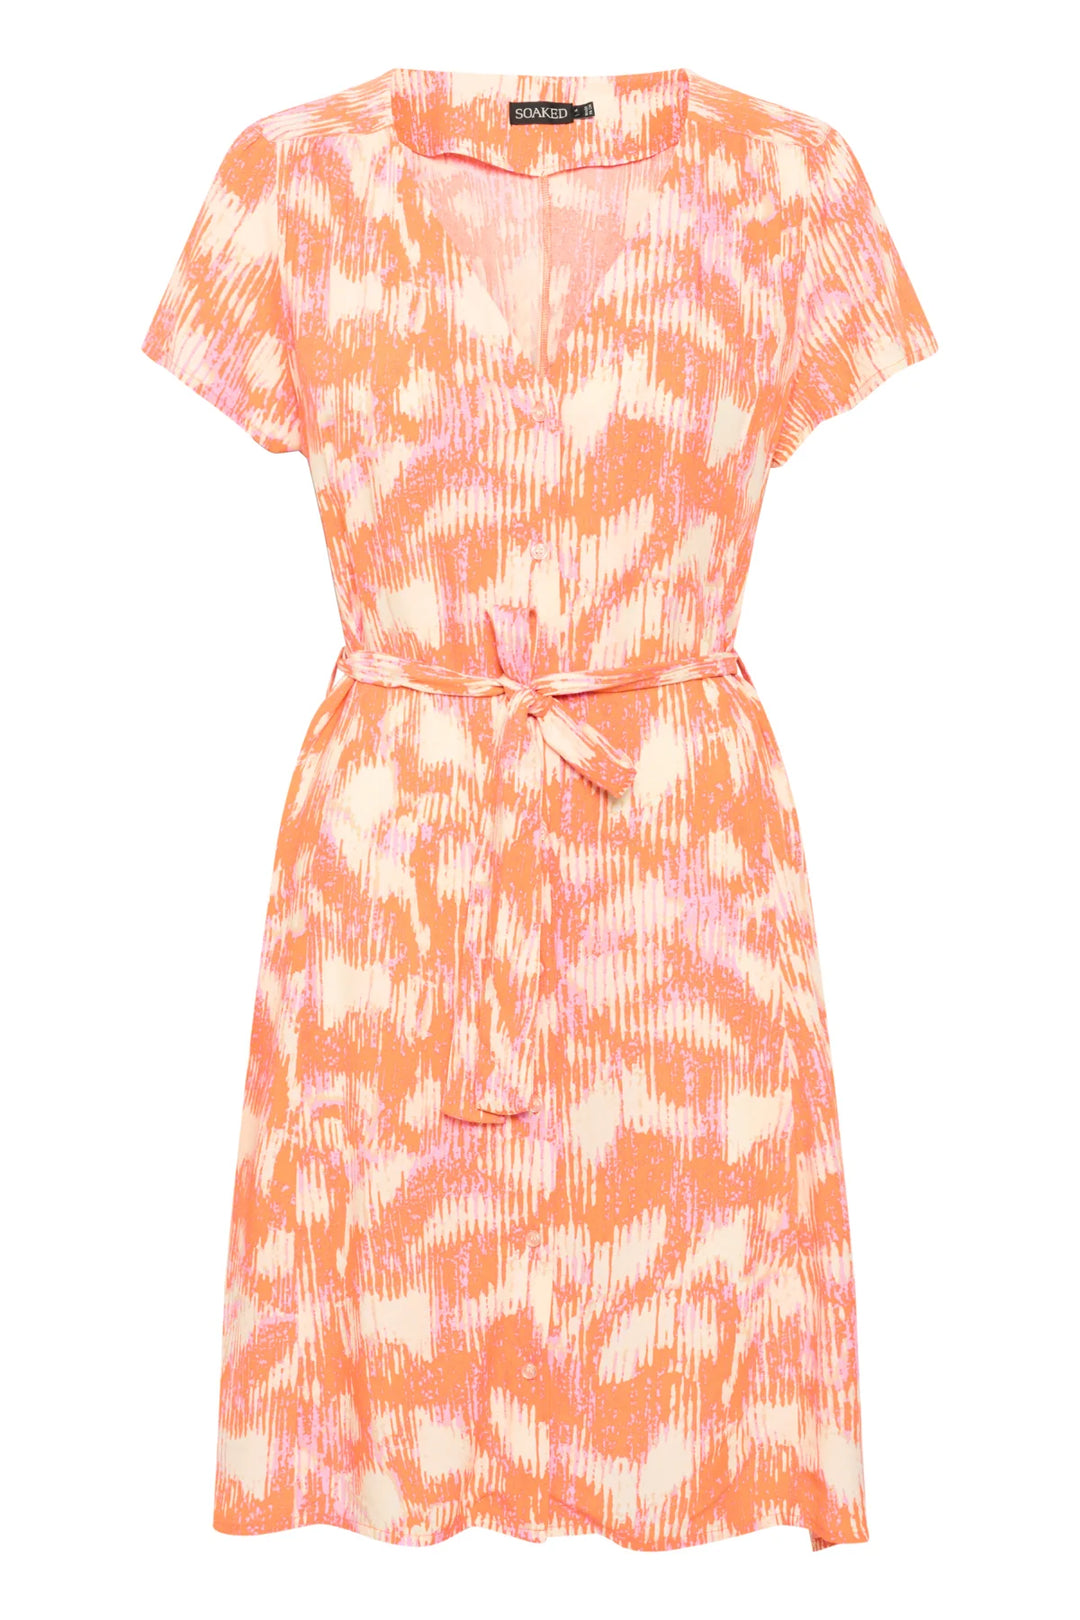 SLDUSINE SHORT DRESS "Tangerine"